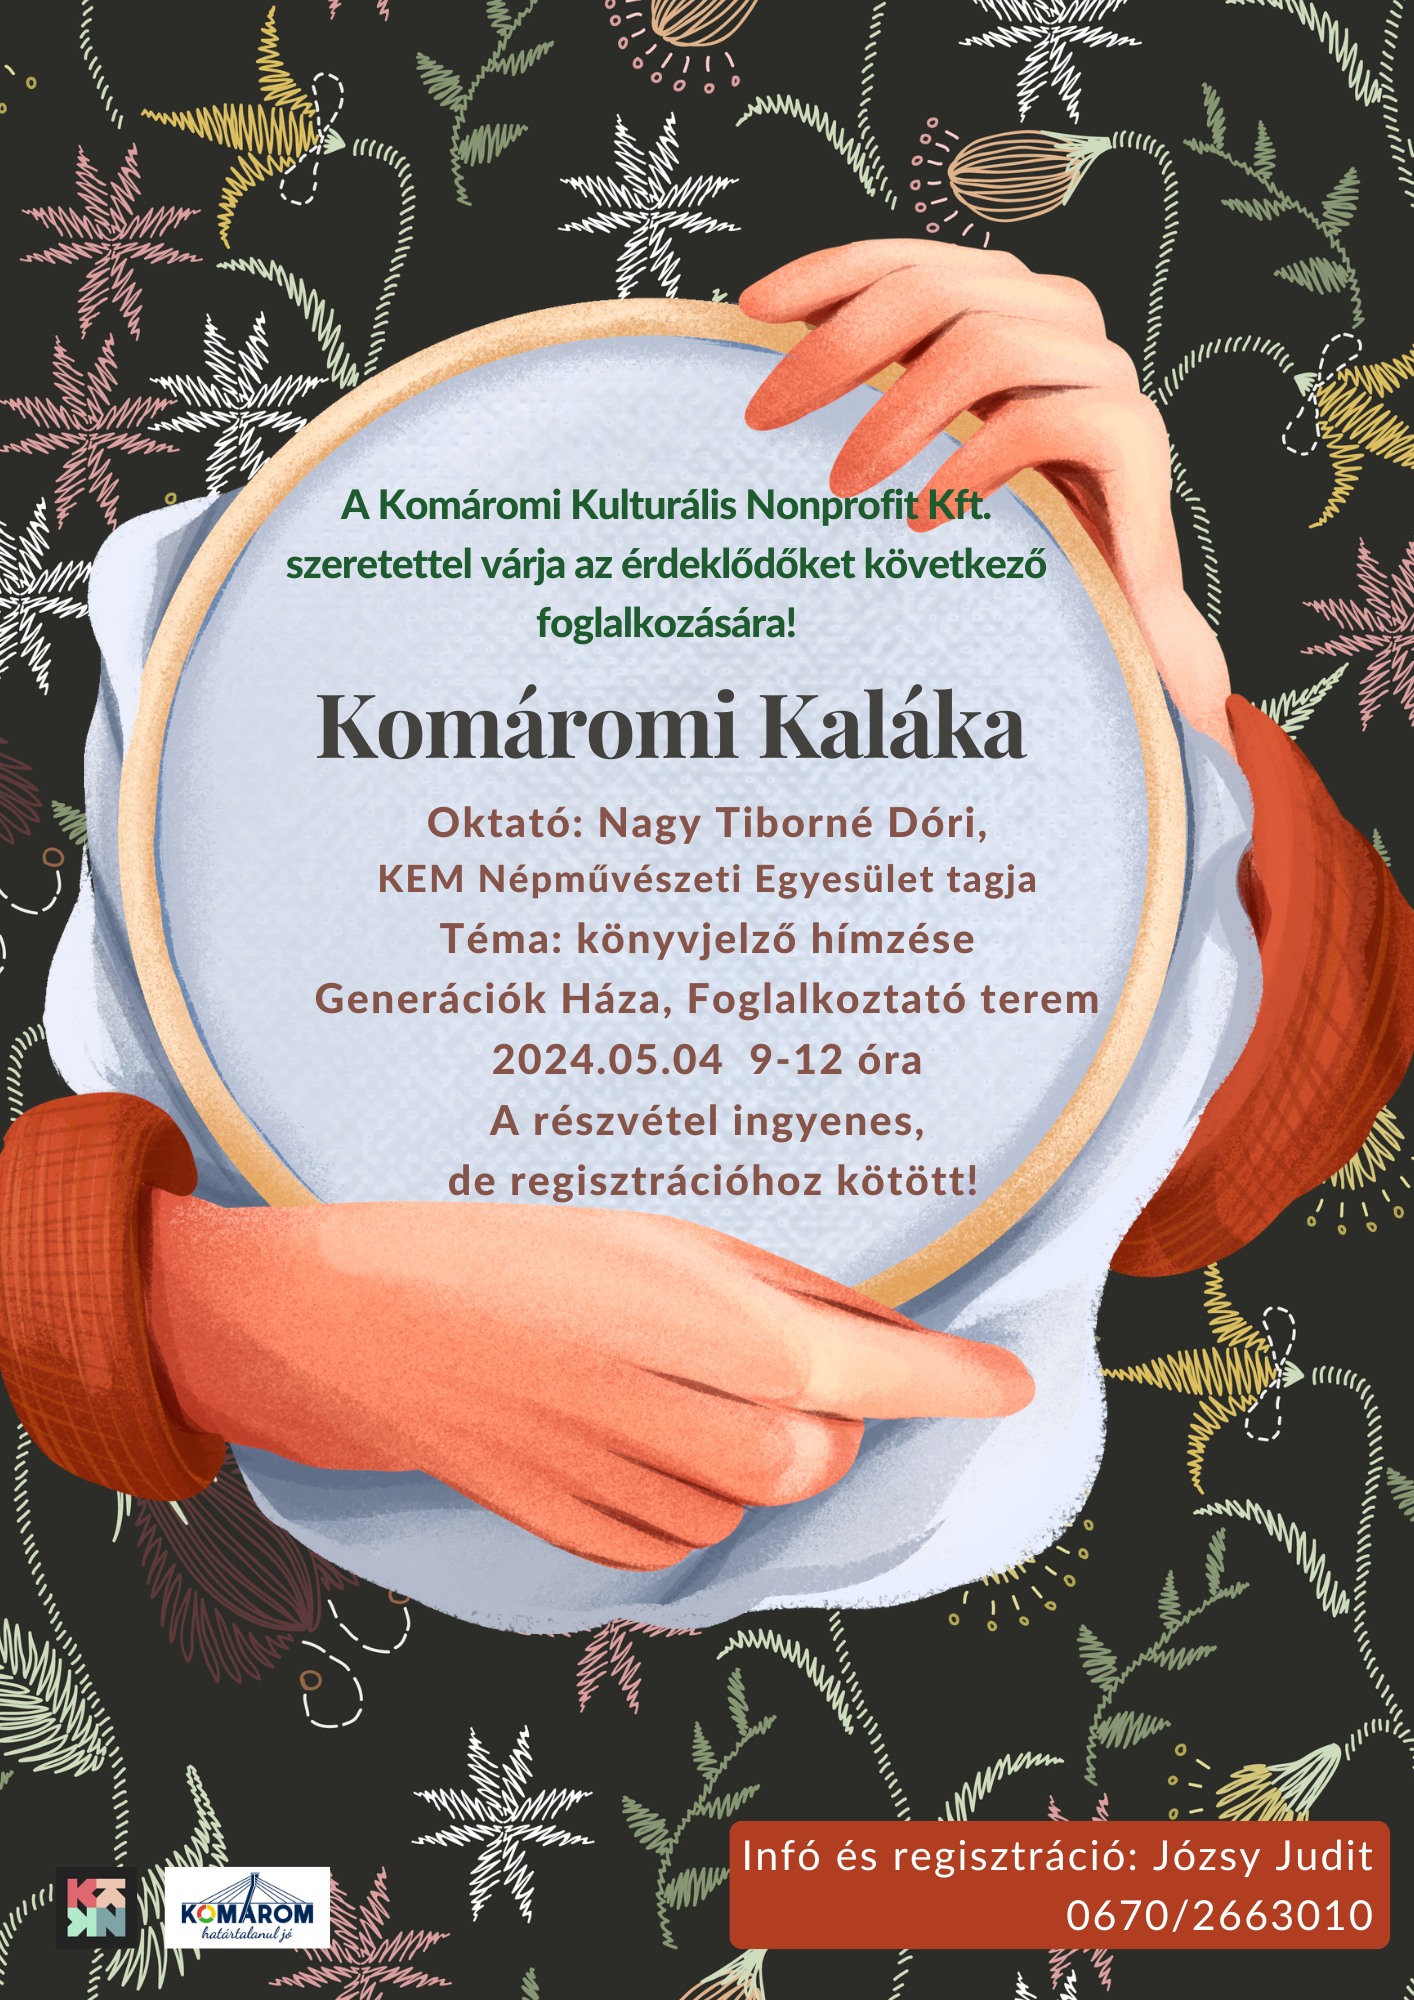 Komáromi Kaláka: Hímzés 05.04.